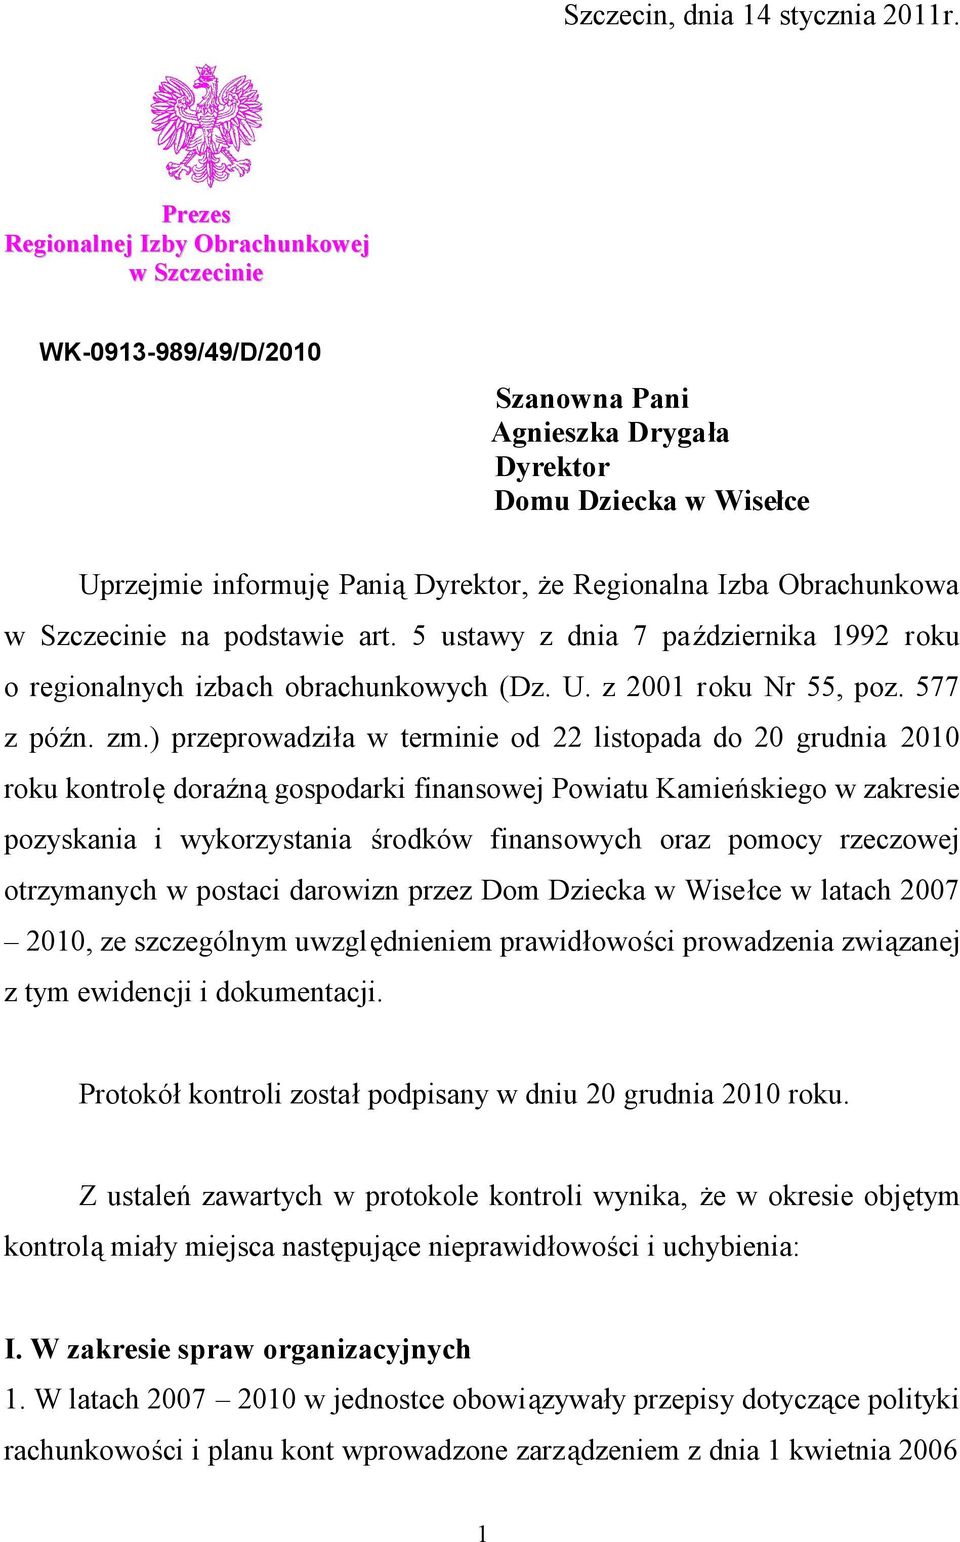 Obrachunkowa w Szczecinie na podstawie art. 5 ustawy z dnia 7 października 1992 roku o regionalnych izbach obrachunkowych (Dz. U. z 2001 roku Nr 55, poz. 577 z późn. zm.